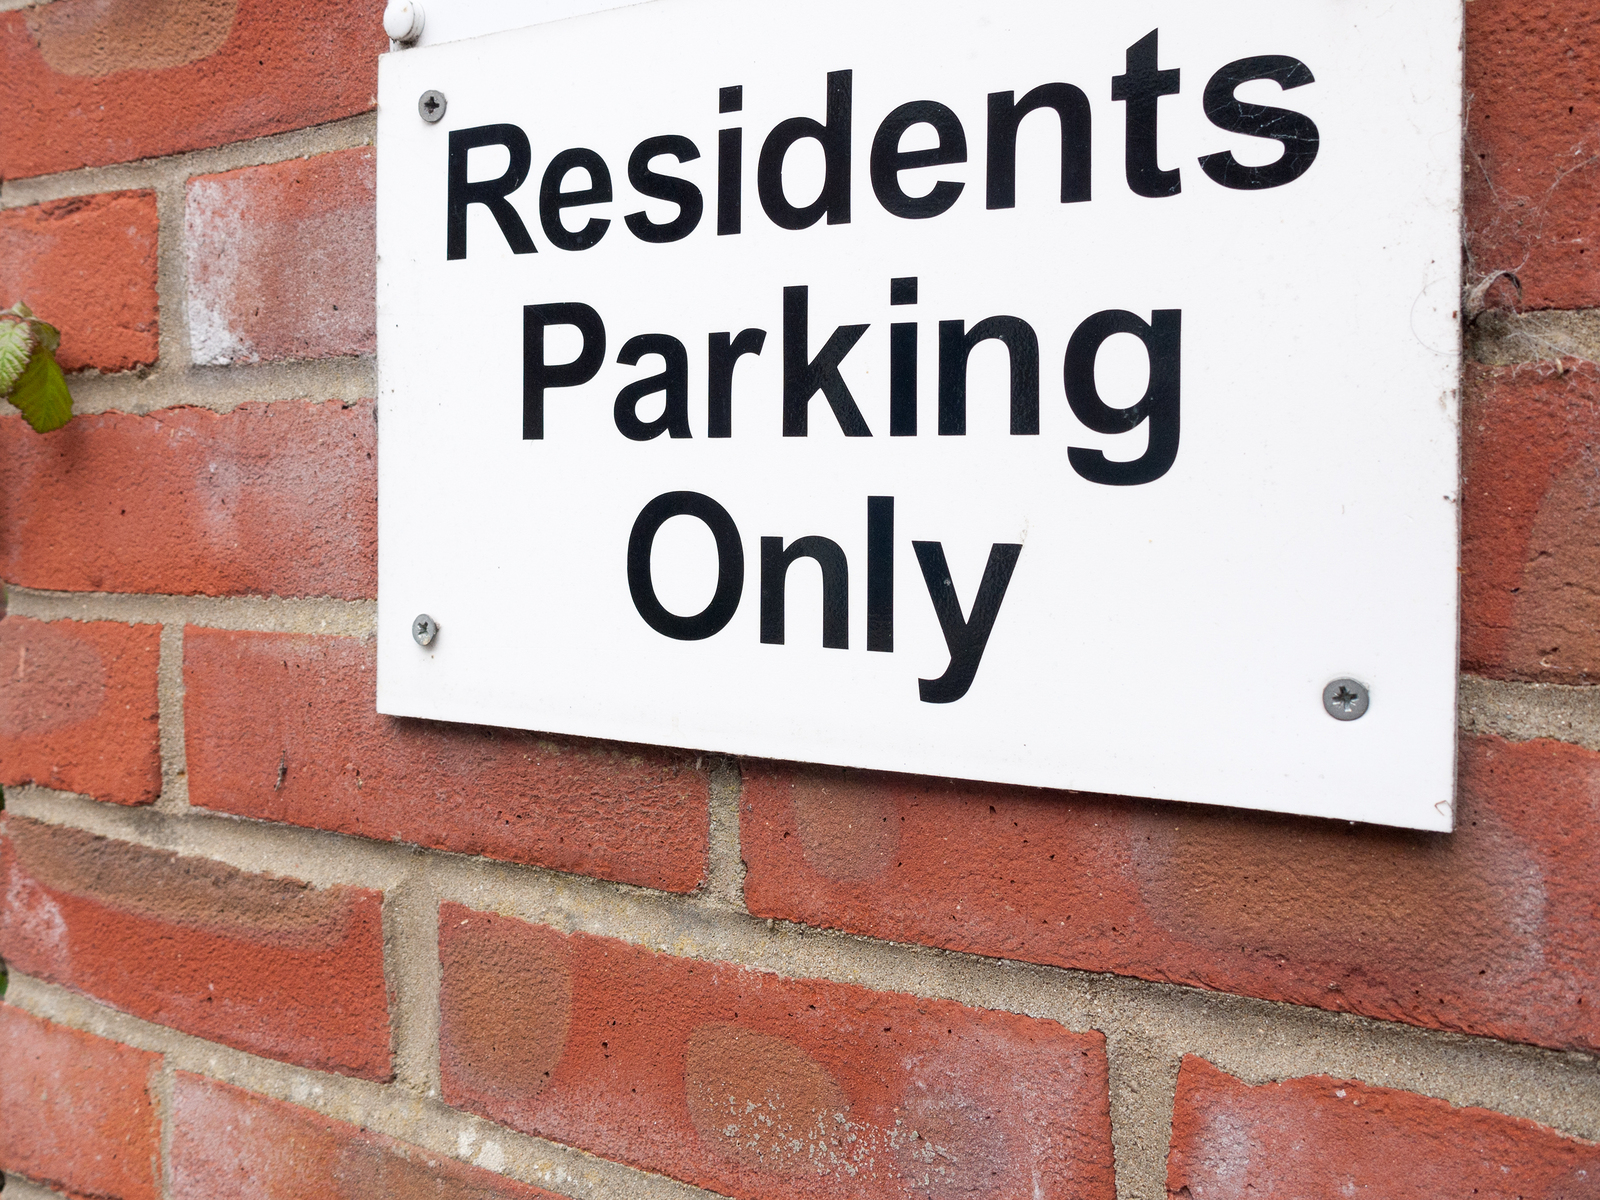 Nechcete-li, aby vaše auto bylo odtaženo, vyhněte se zónám určeným pro rezidenty!